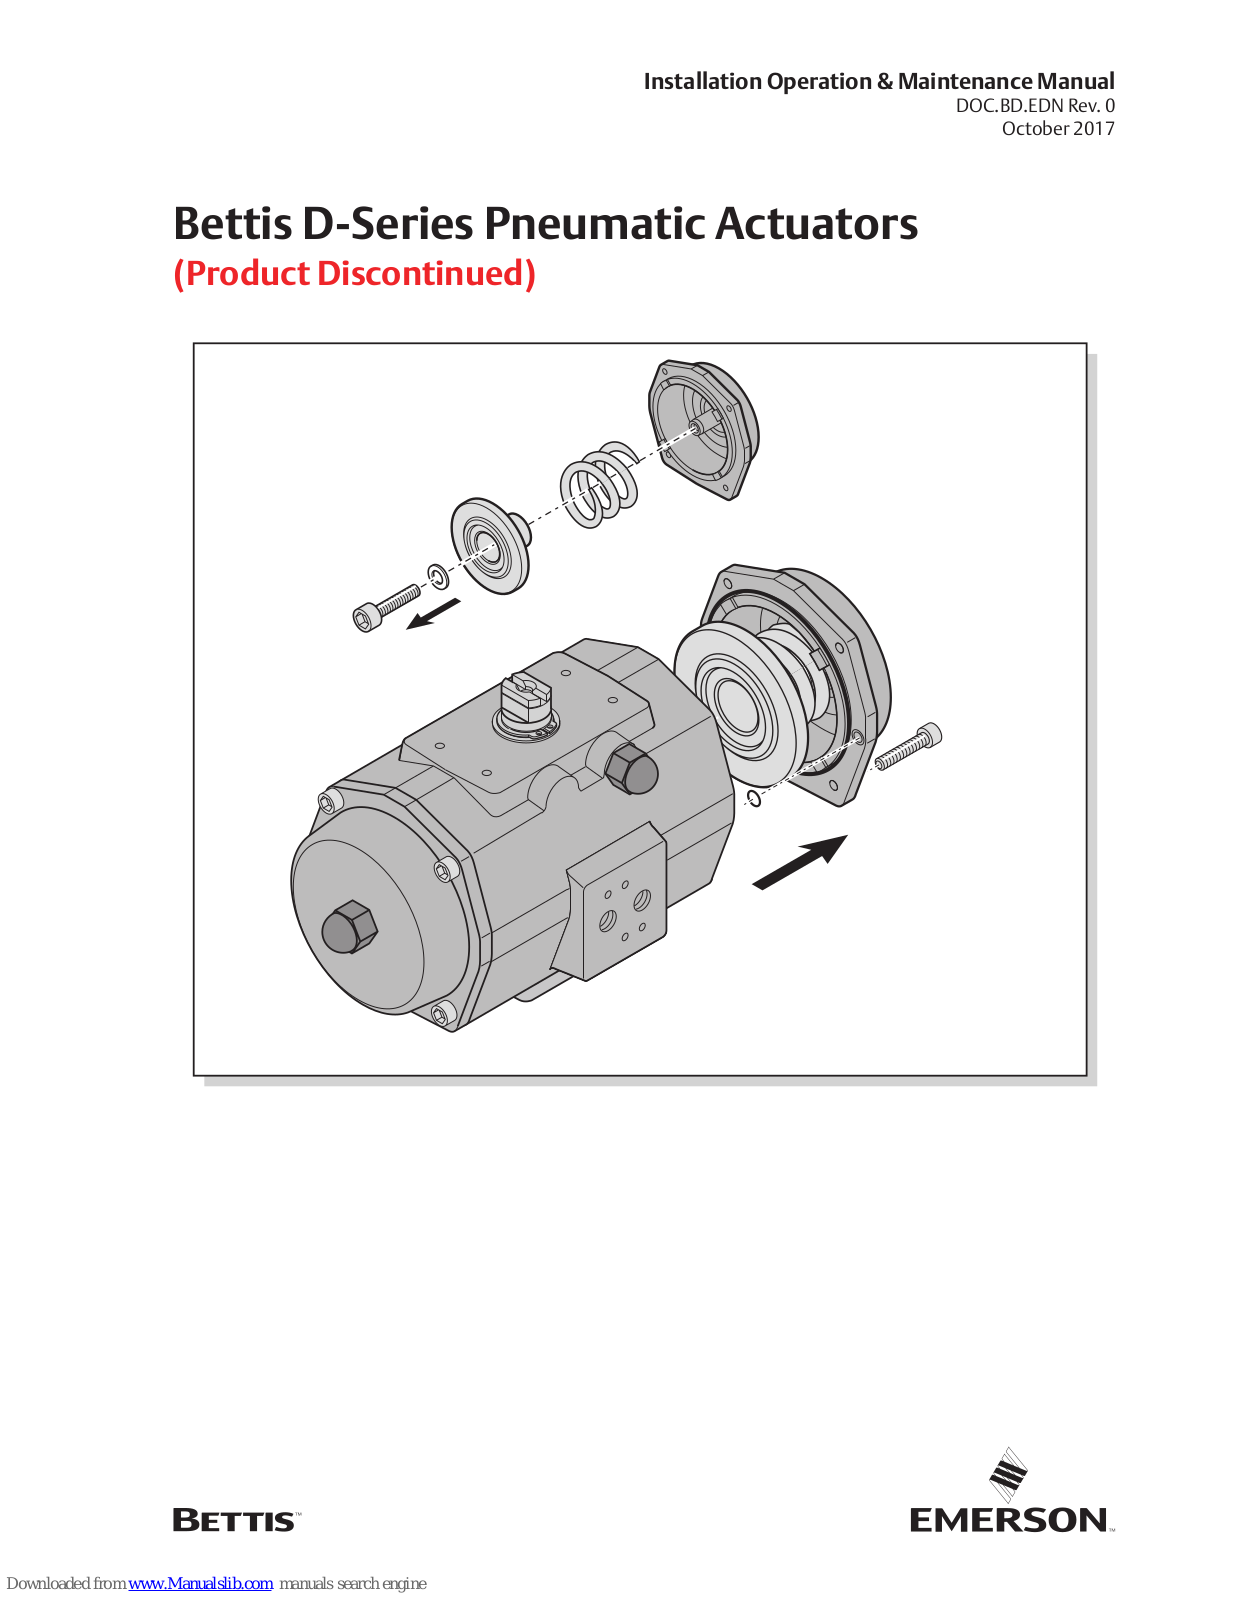 Emerson Bettis D Series, D12, D40, D65, D150 Installation, Operation & Maintenance Manual